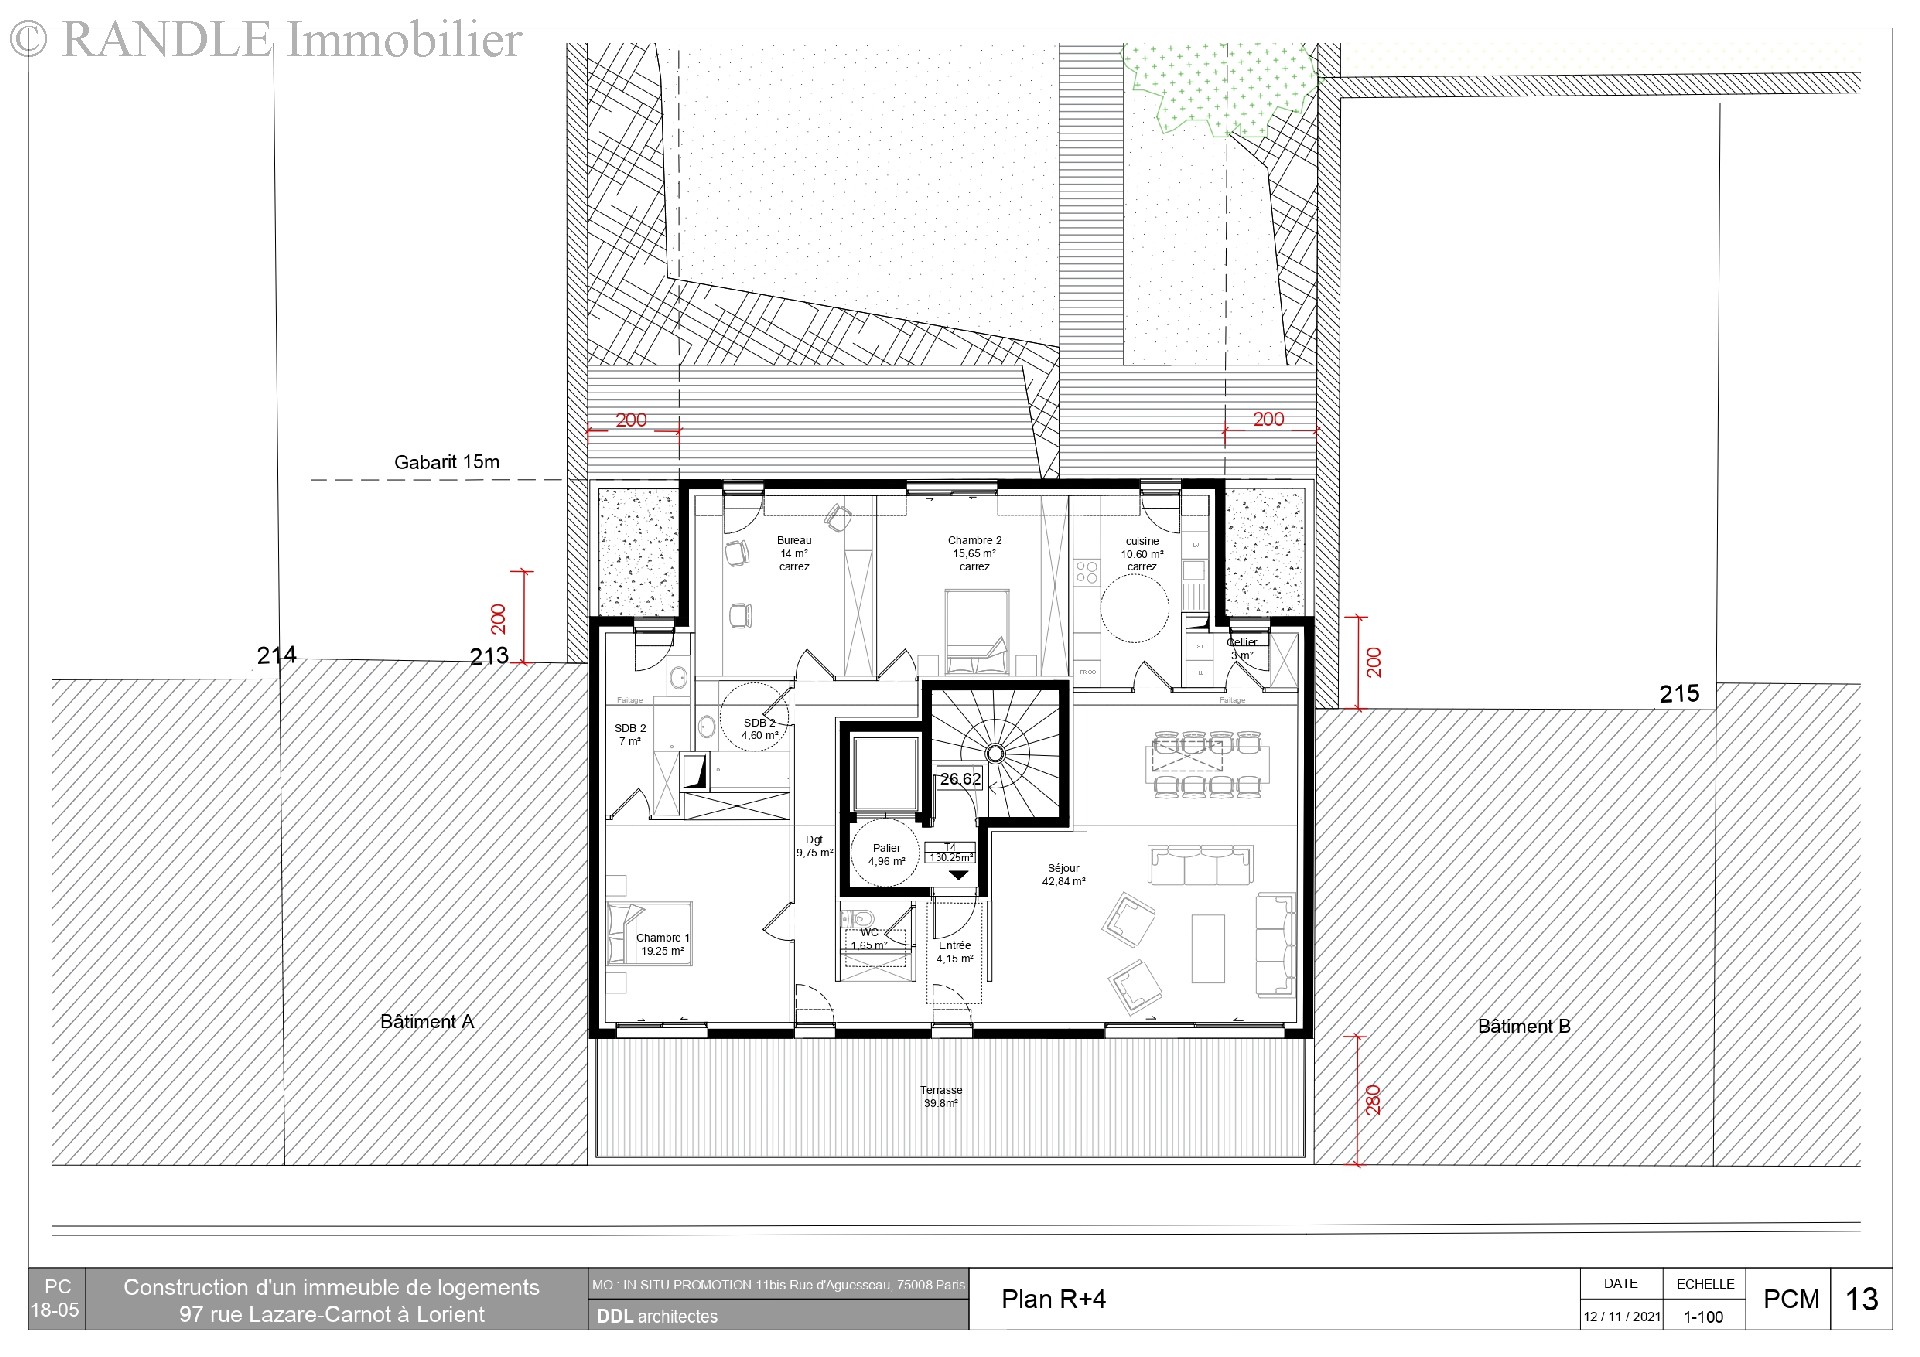 Vente appartement - LORIENT 130 m², 4 pièces